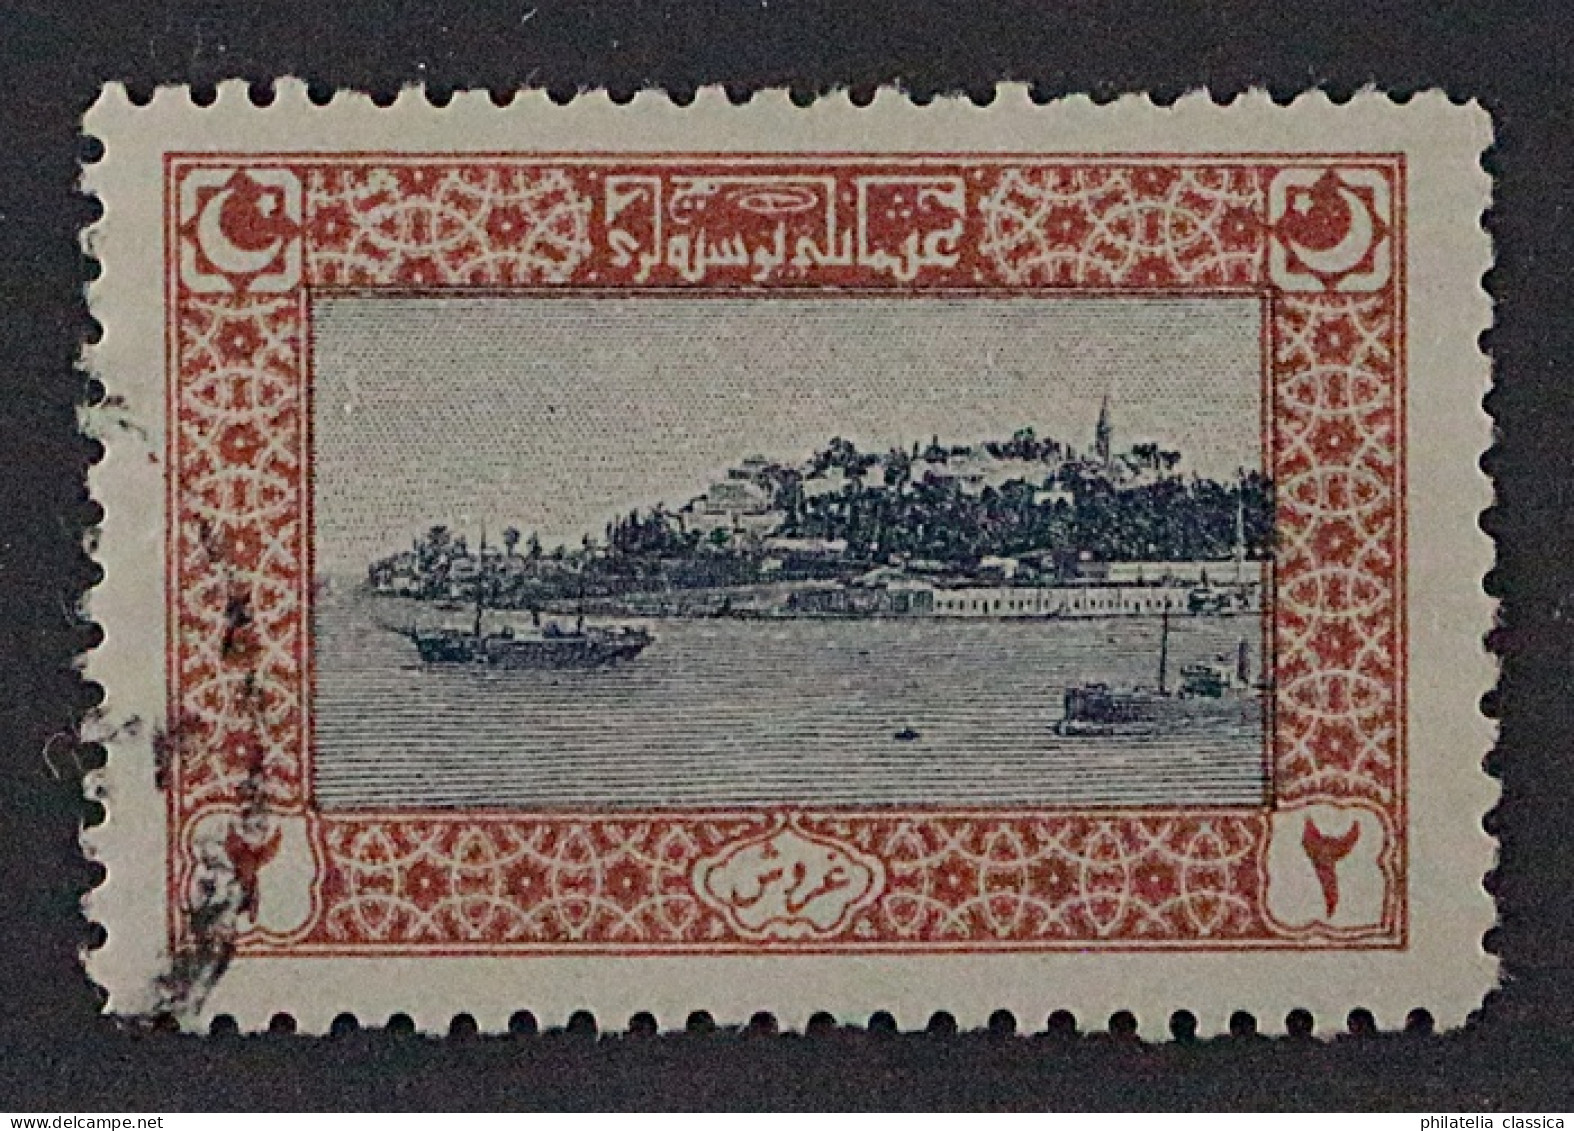 1918, TÜRKEI 635 C, 2 Pia. Serailspitze Mit Zähnung 11 1/, Sauber Gestempelt, - Used Stamps